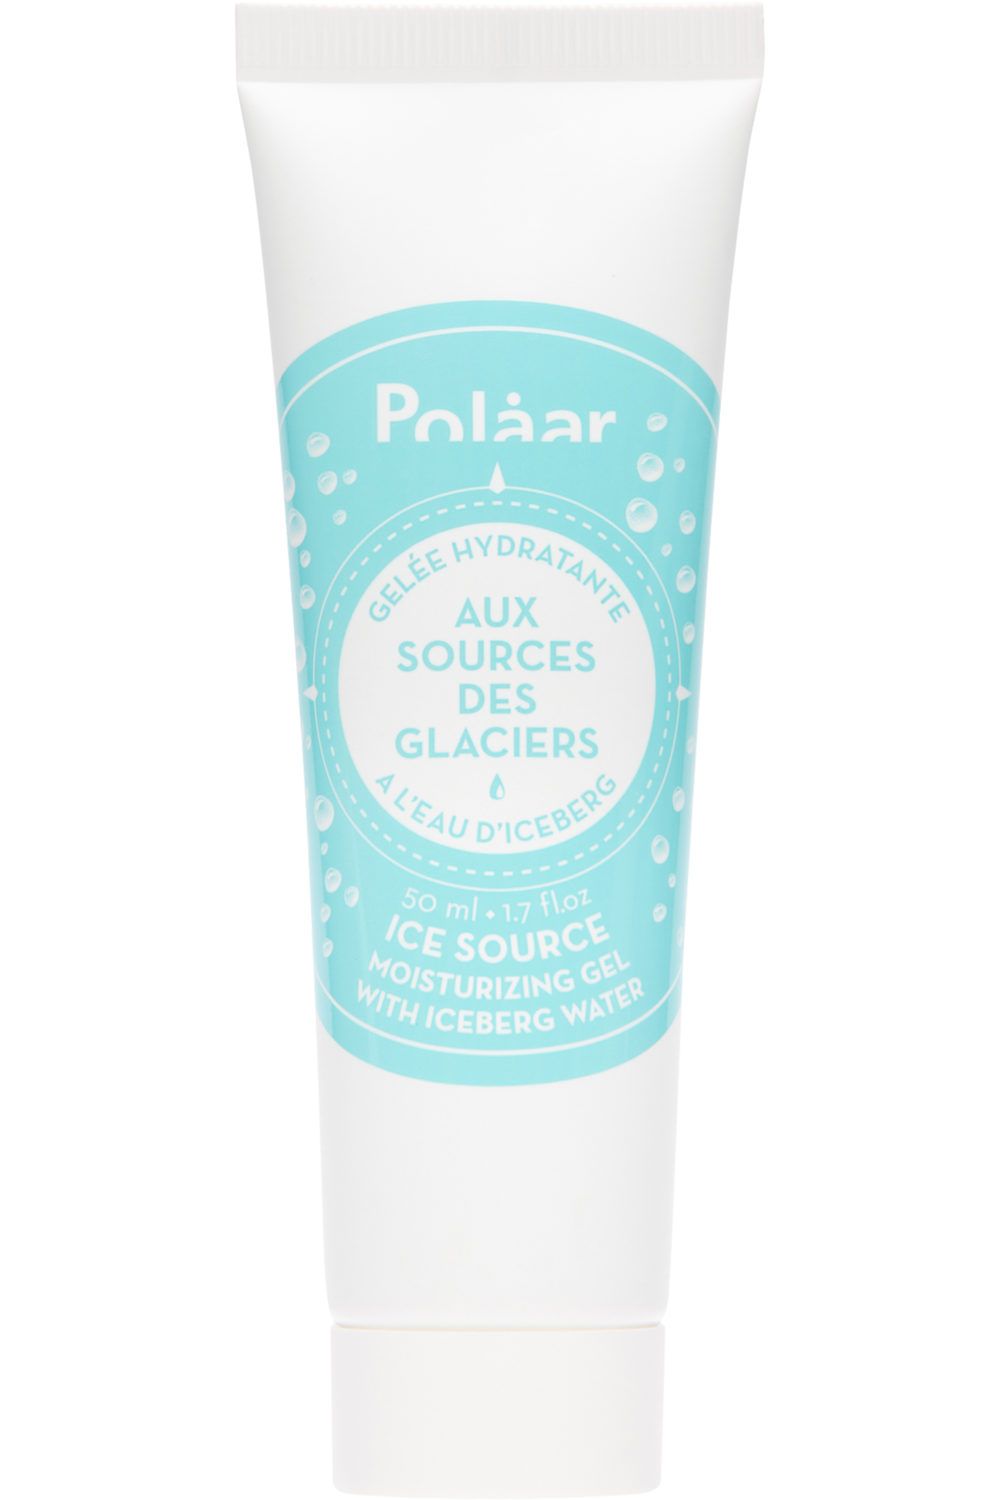 Polaar - Gelée hydratante aux Sources des Glaciers